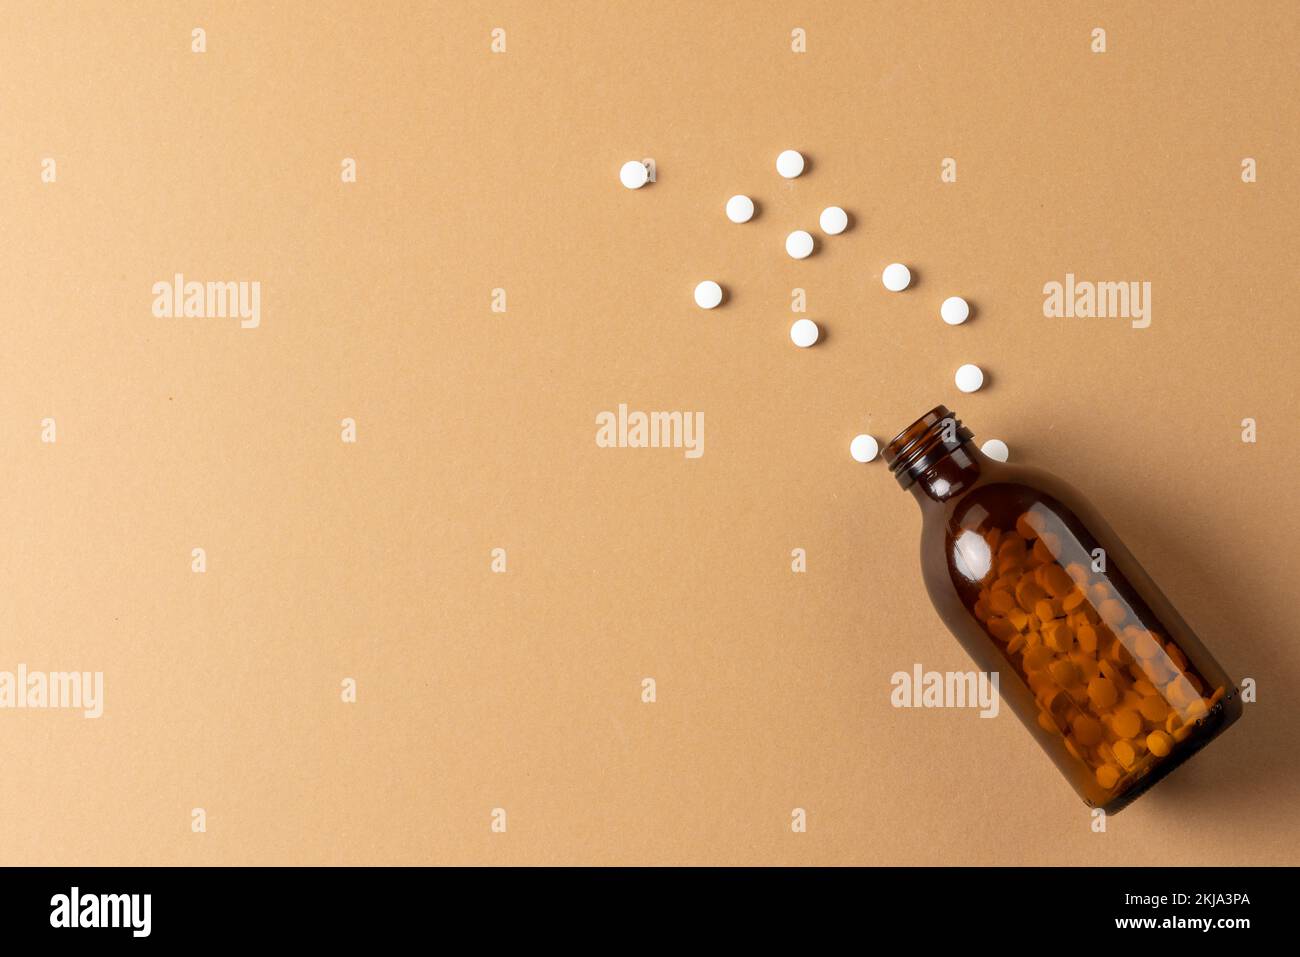 Composition d'un flacon de pilule en verre brun qui déborde de pilules blanches sur fond marron avec espace de copie Banque D'Images